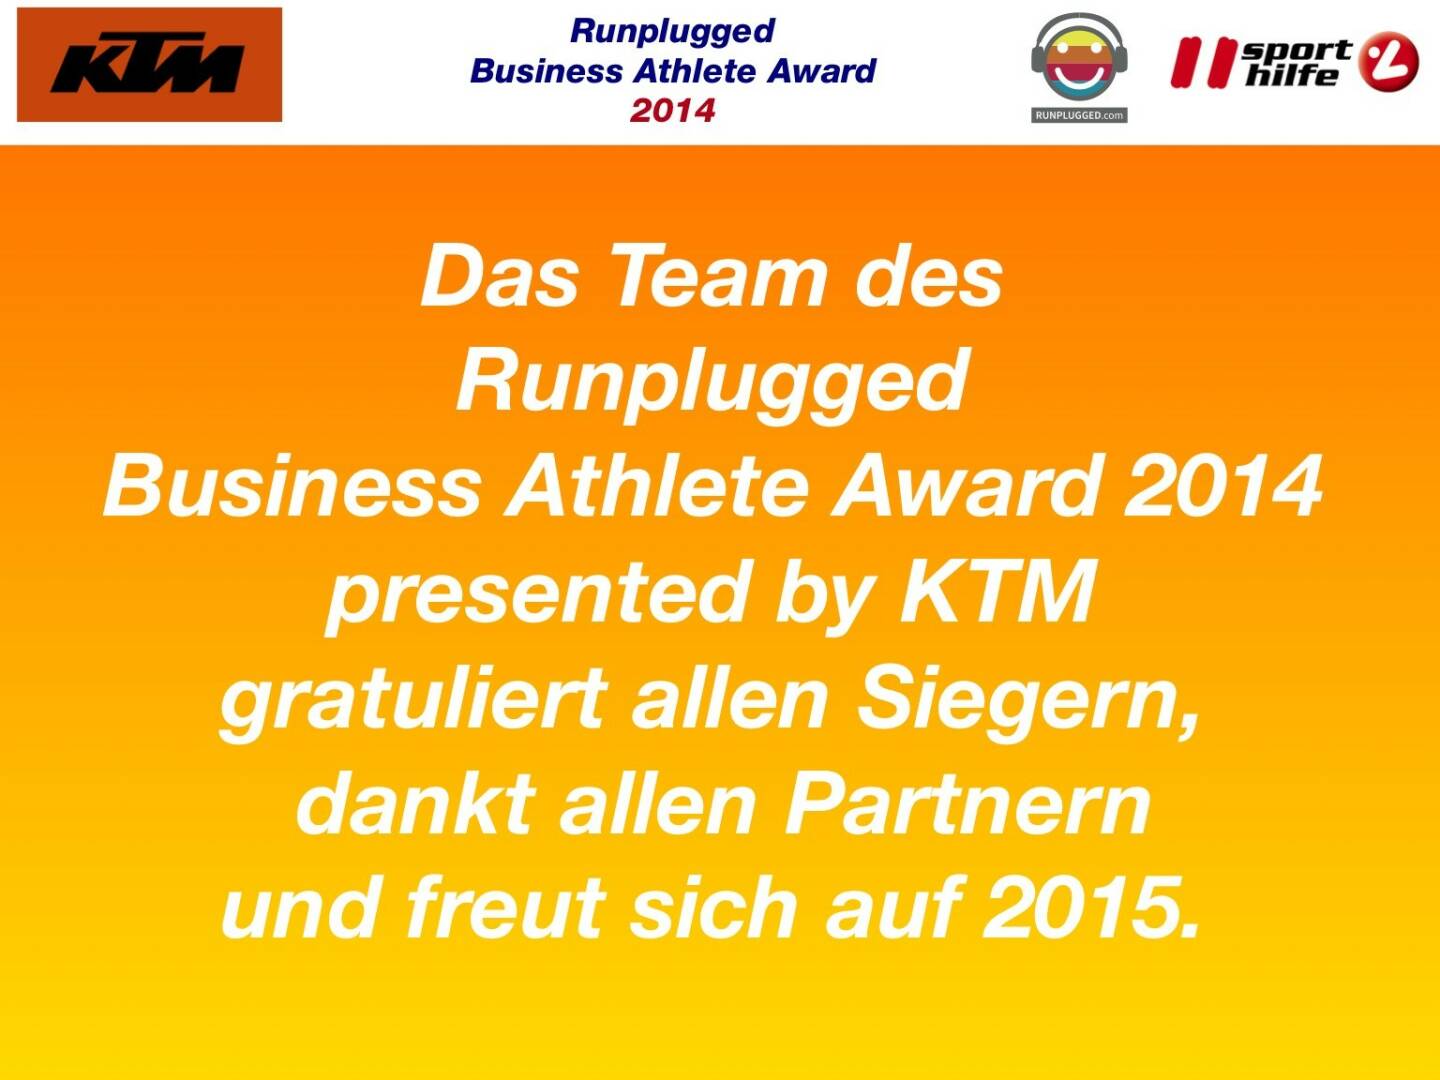 Das Team des Runplugged Business Athlete Award 2014 presented by KTM gratuliert allen Siegern, dankt allen Partnern und freut sich auf 2015.